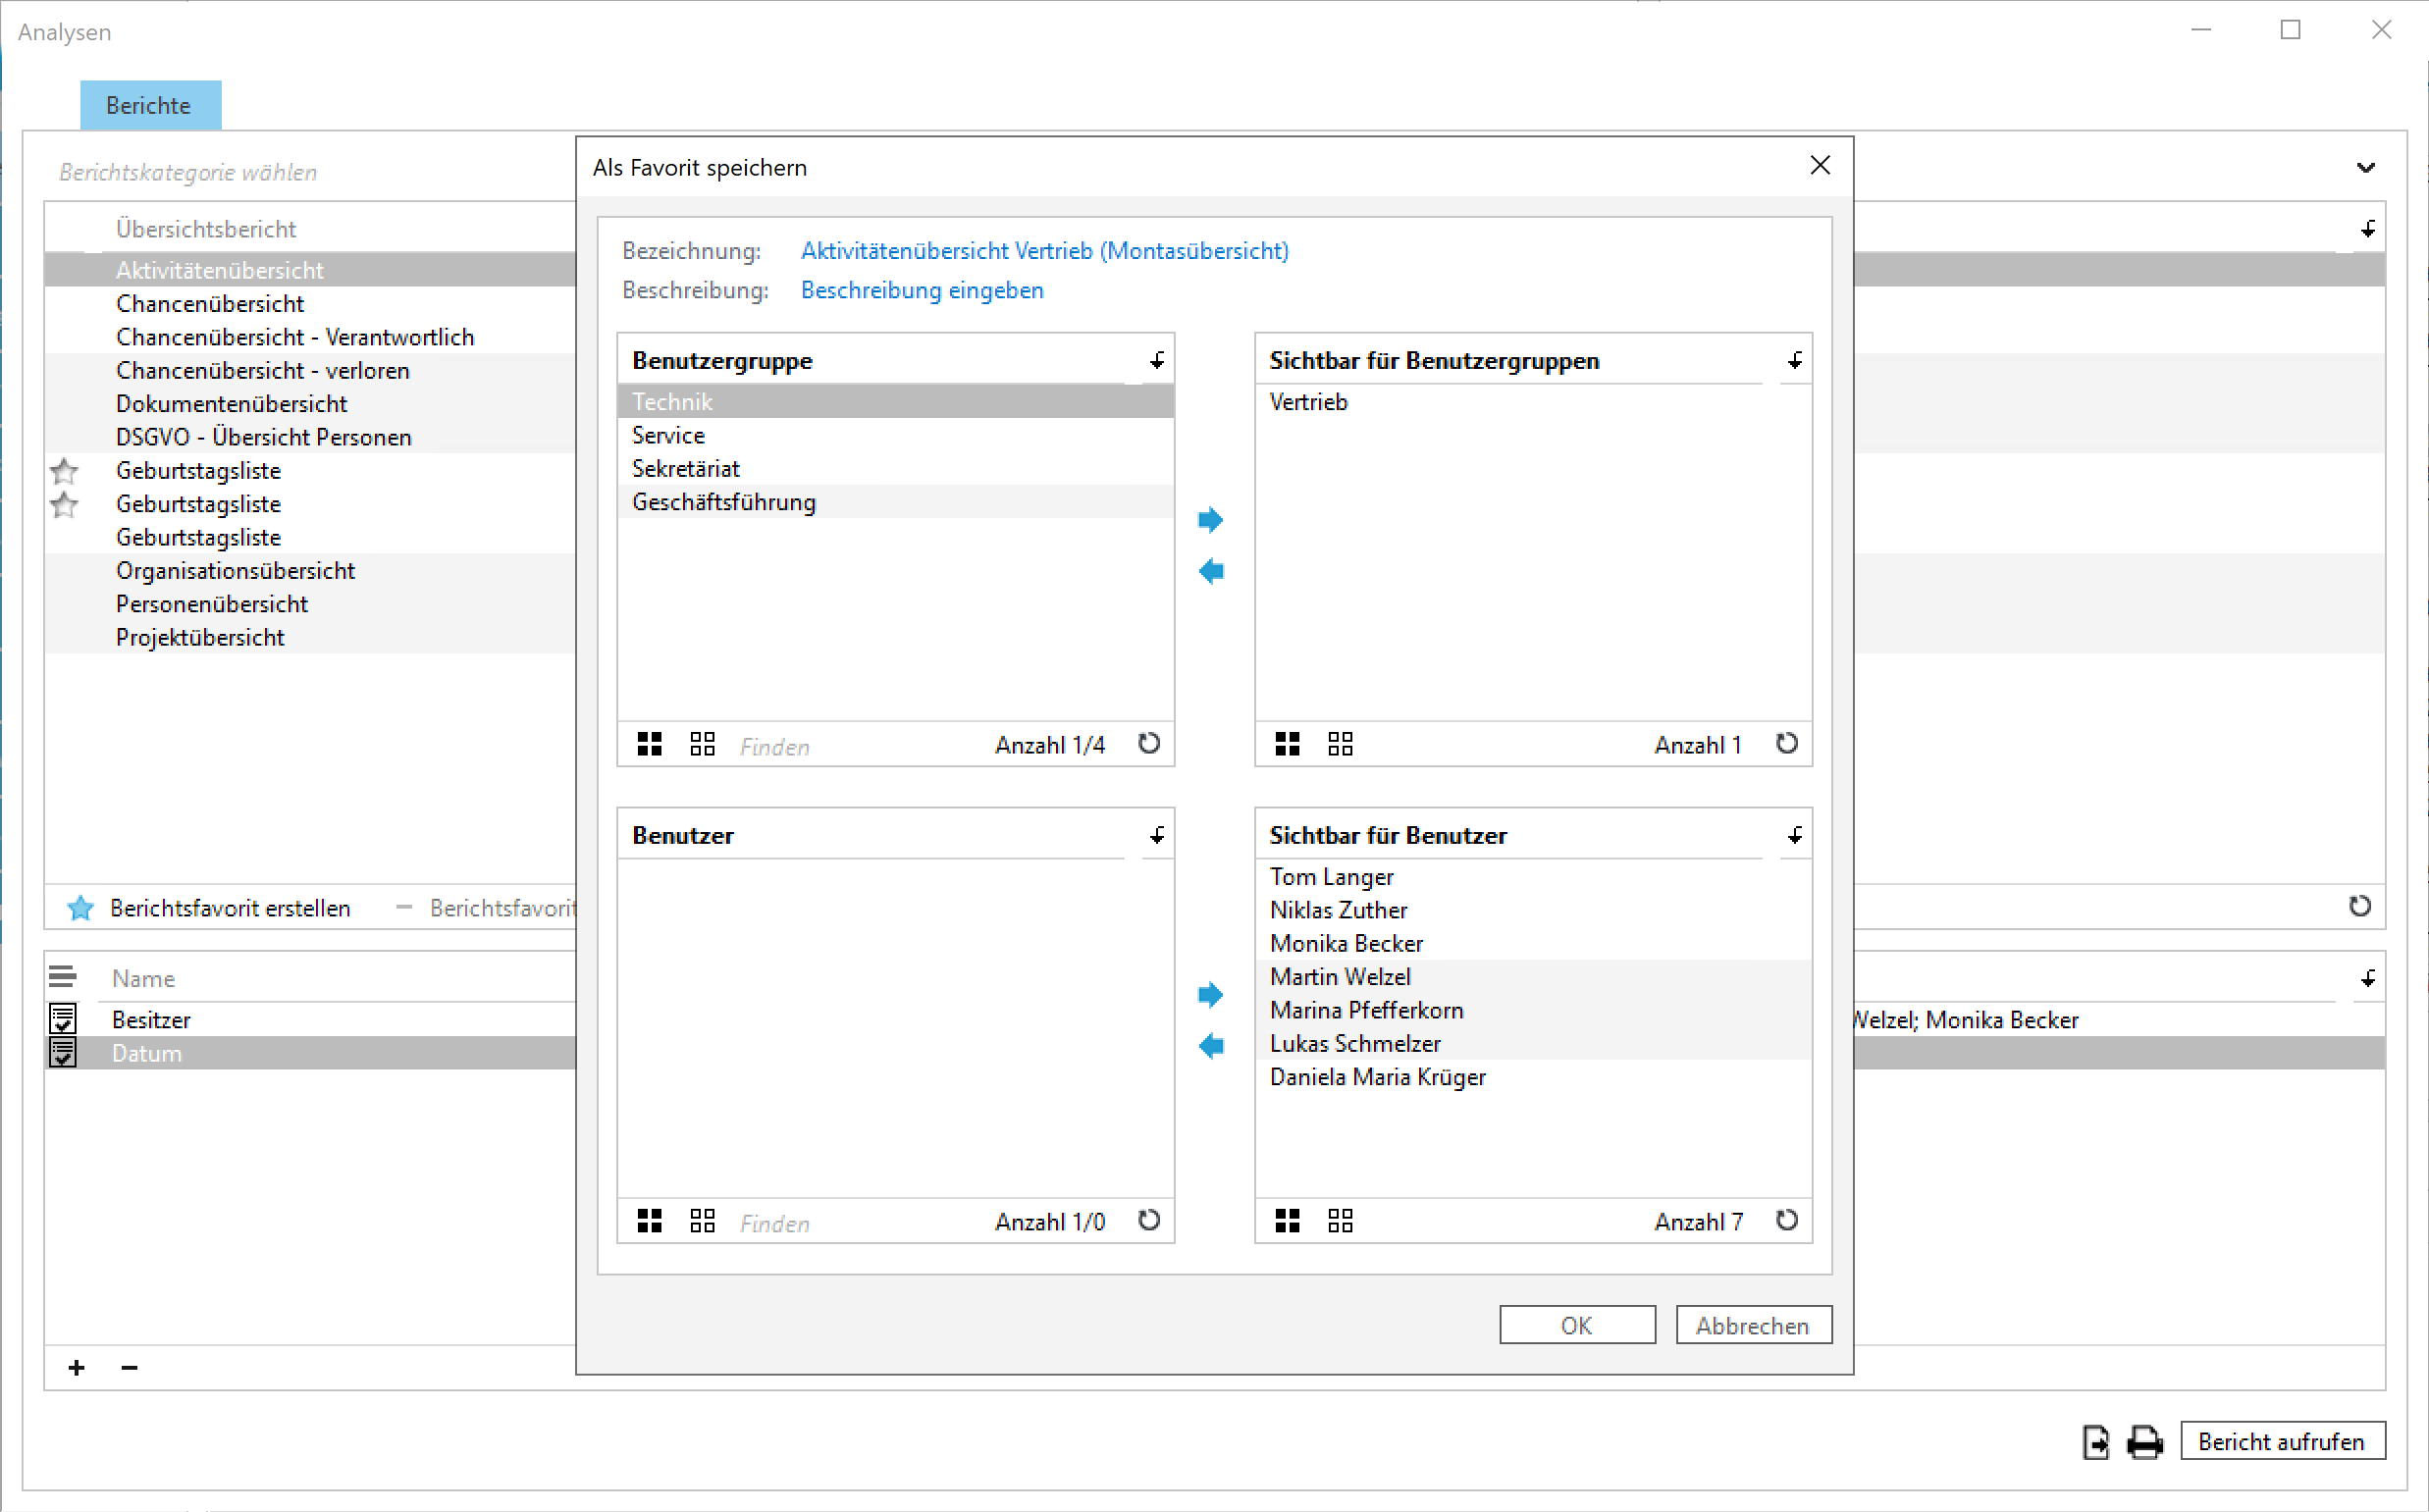 Das Bild zeigt einen Screenshot aus sellify, in dem ein Anwender sich einen Bericht als Favorit speichert und direkt anderen Anwendern zugänglich macht.